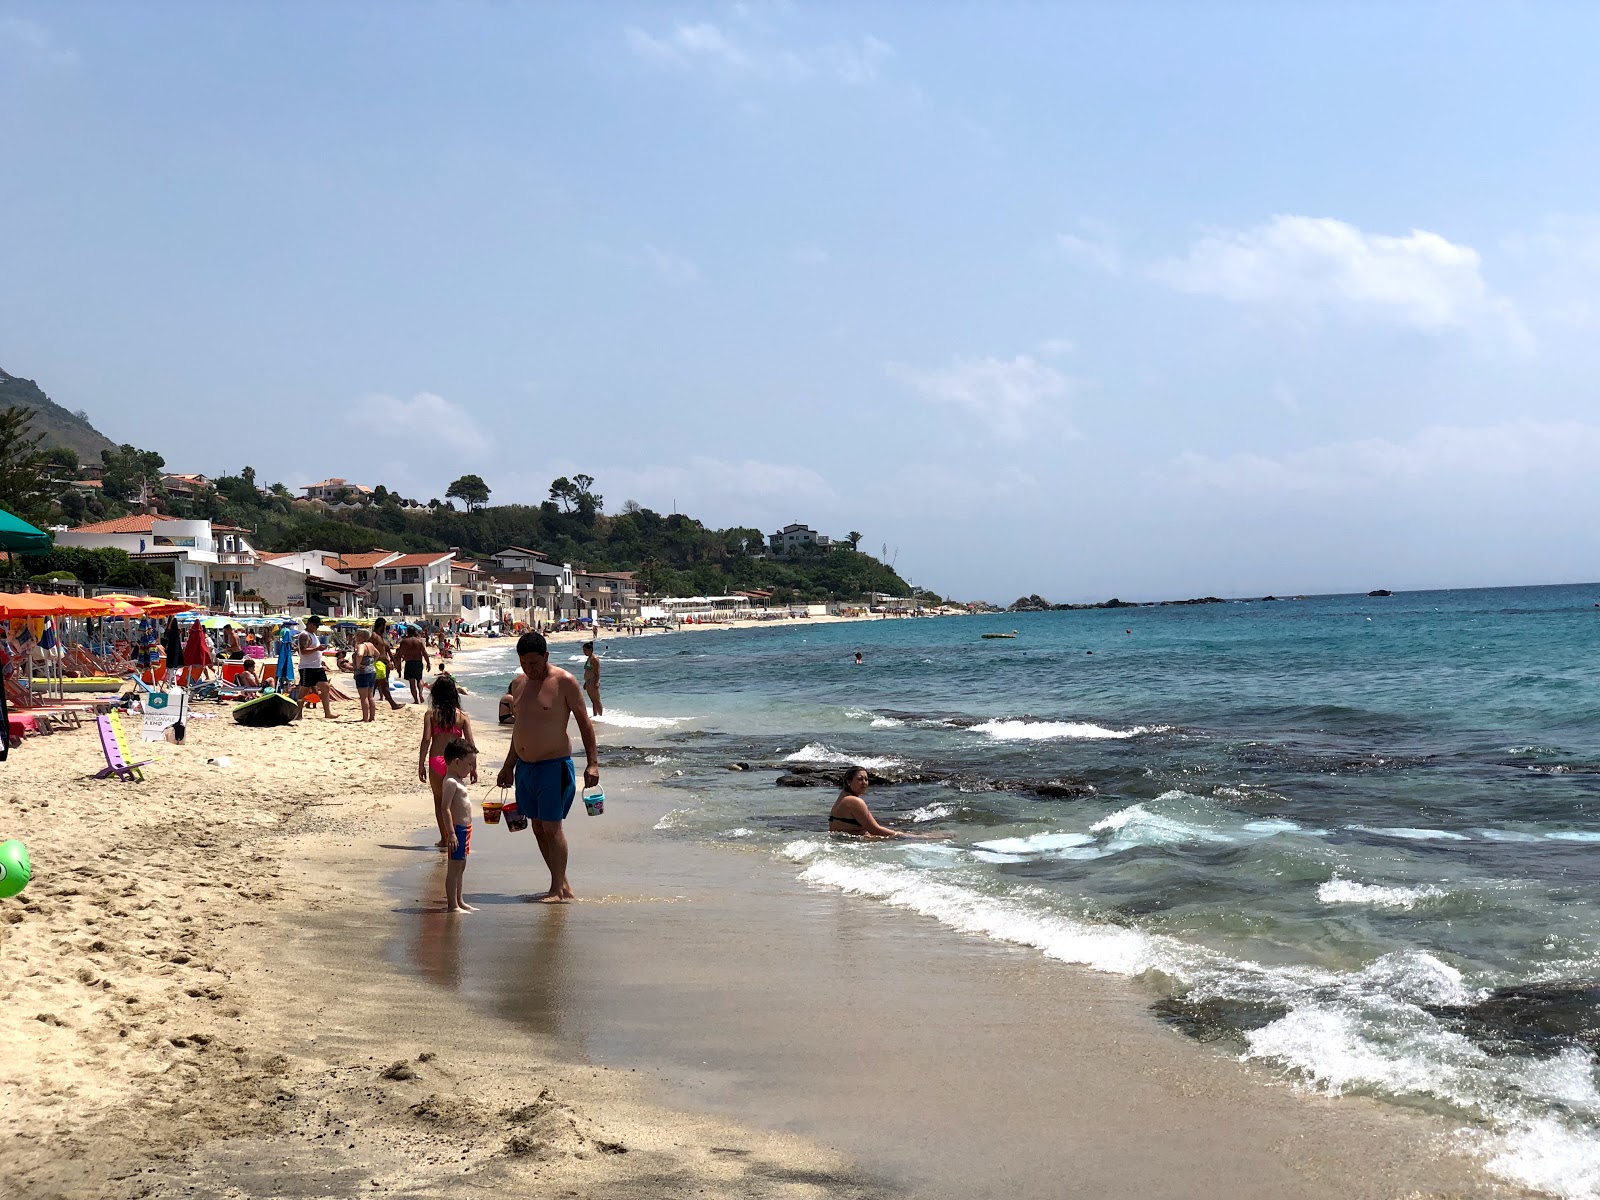 Foto de Spiaggia Santa Maria con playa amplia